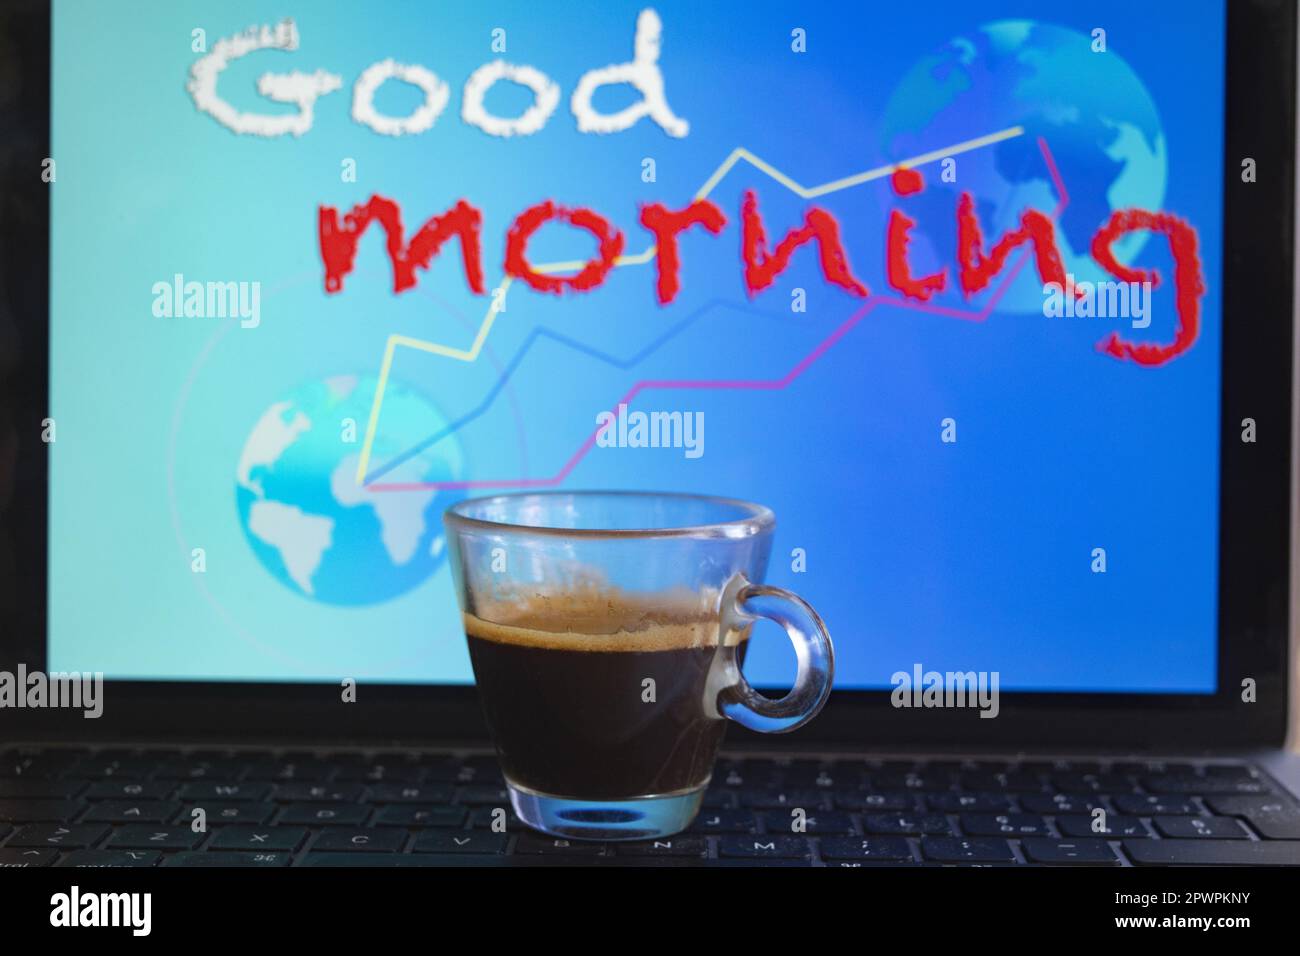 concept de réveil et bon souhait du matin avec une tasse de café Banque D'Images